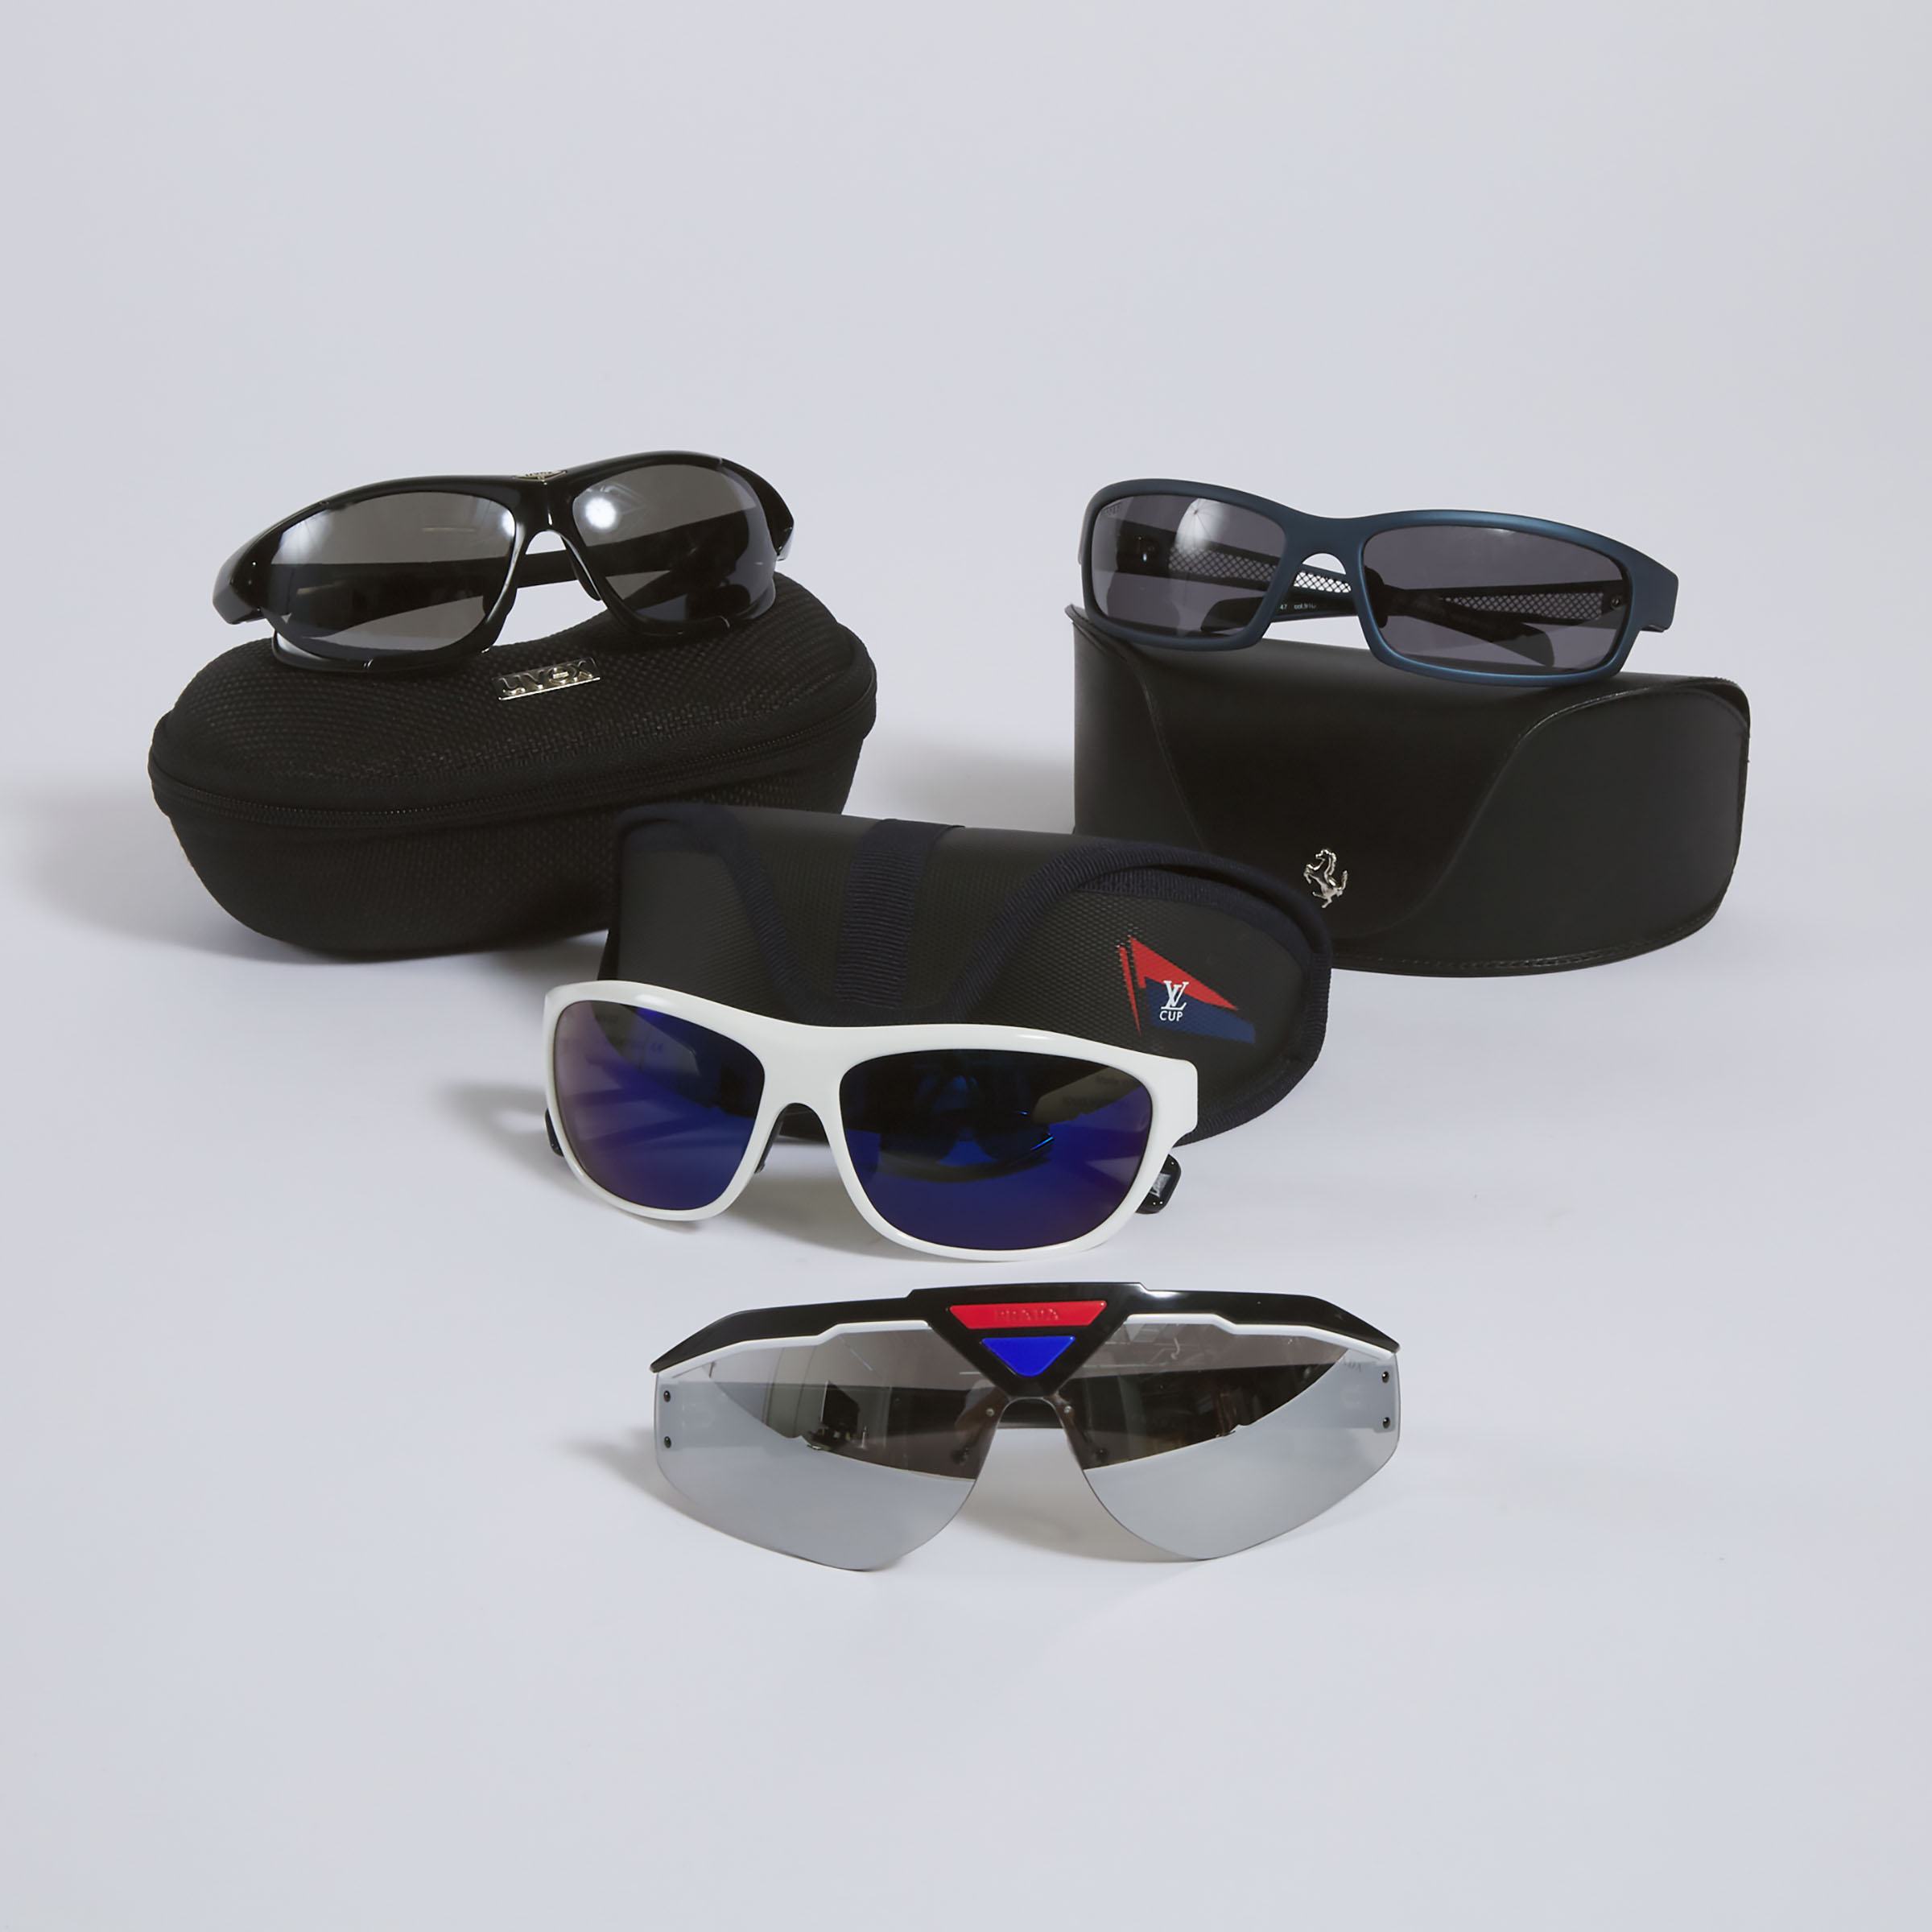 4 Pairs Of Designer Sunglasses